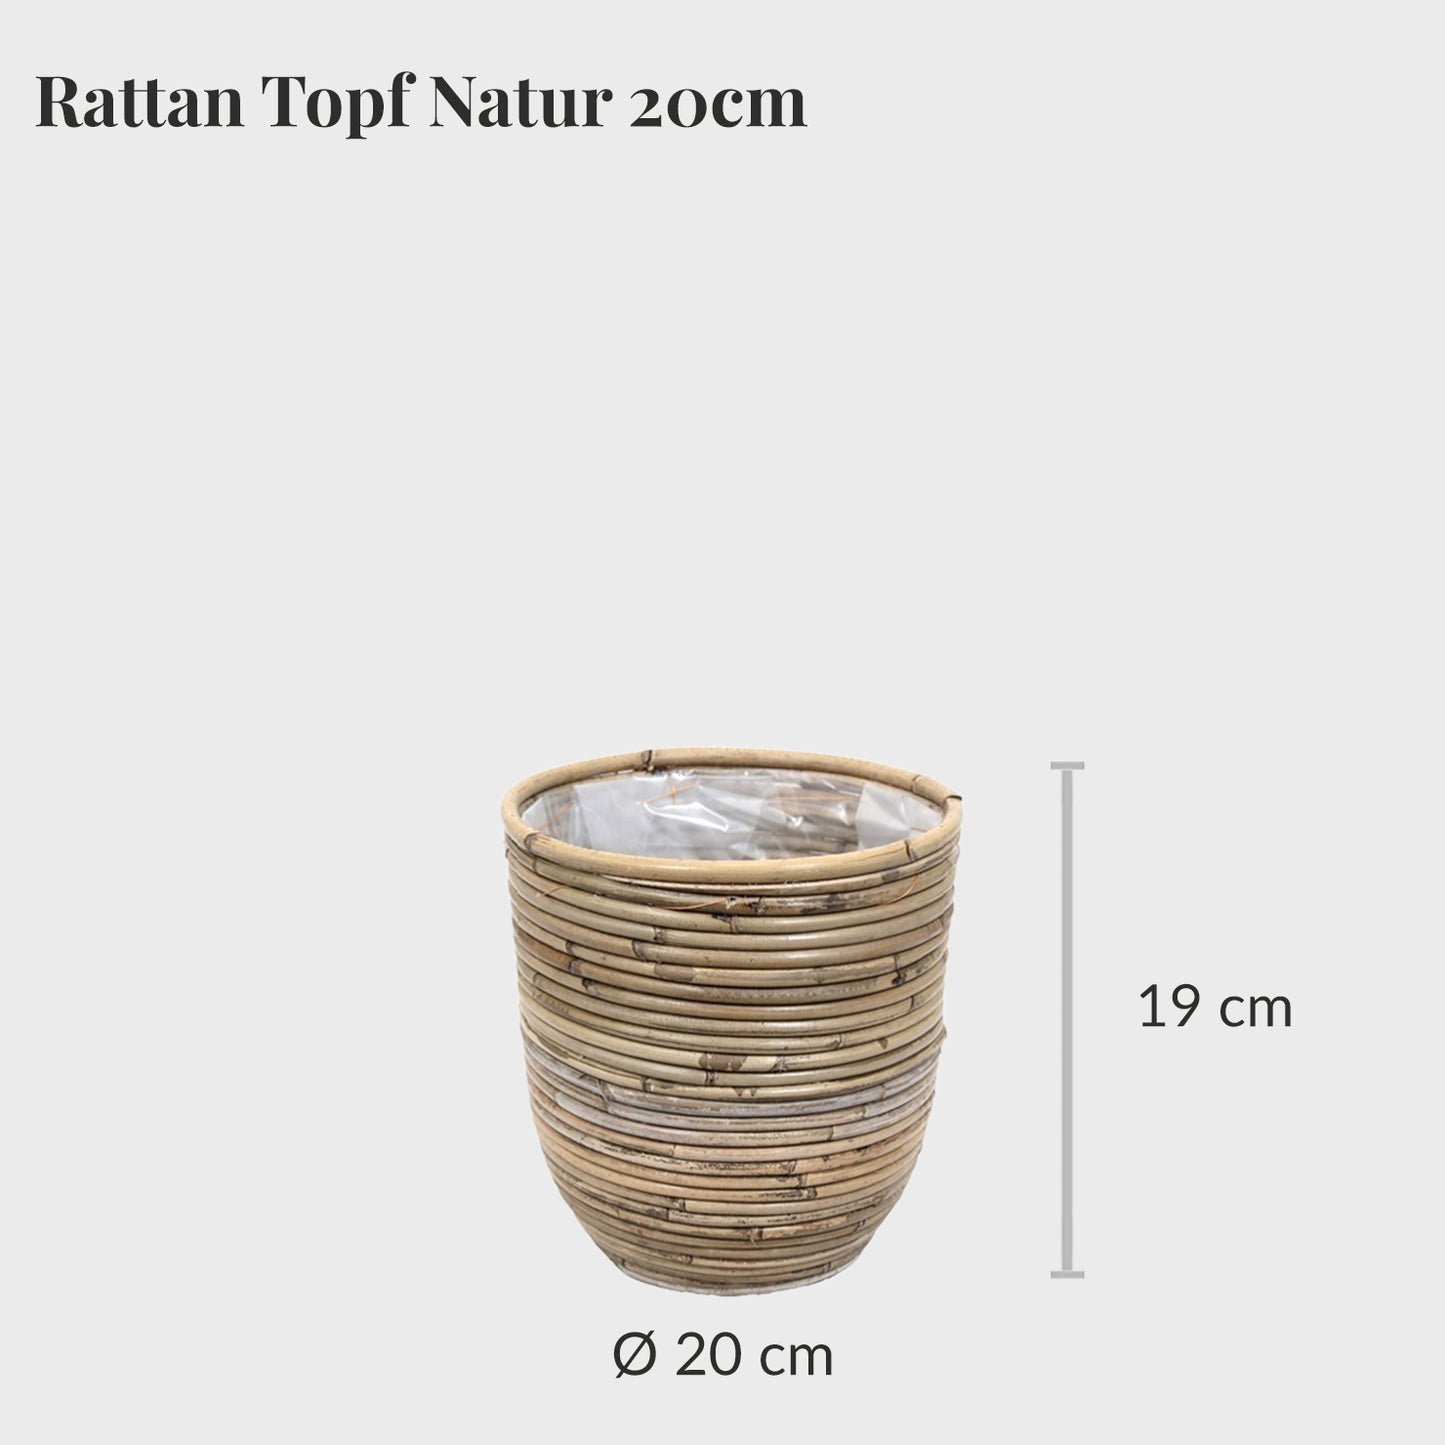 Rattan Topf Natur 20cm